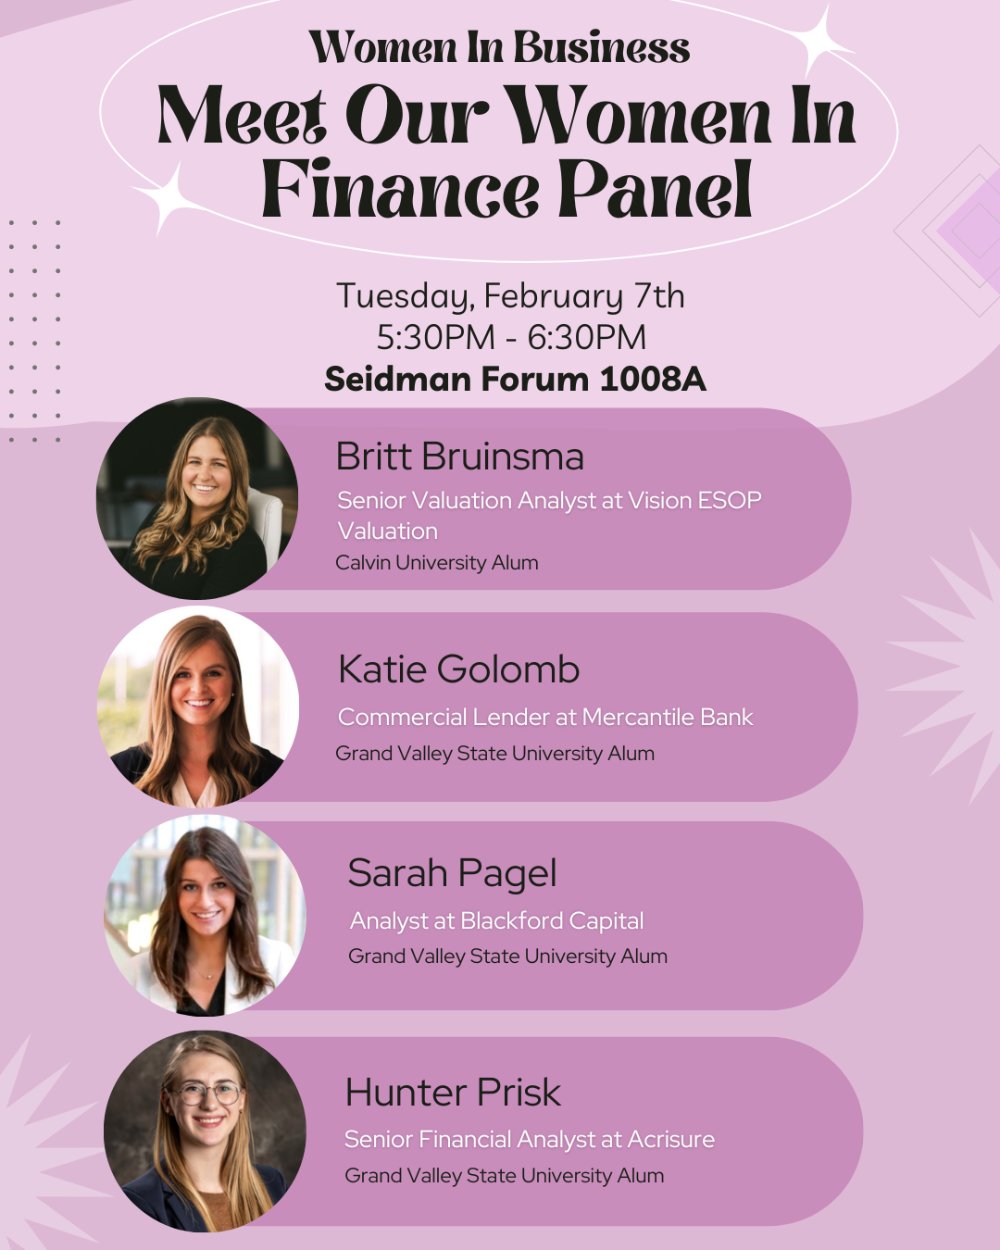 Women In Finance Panel Information